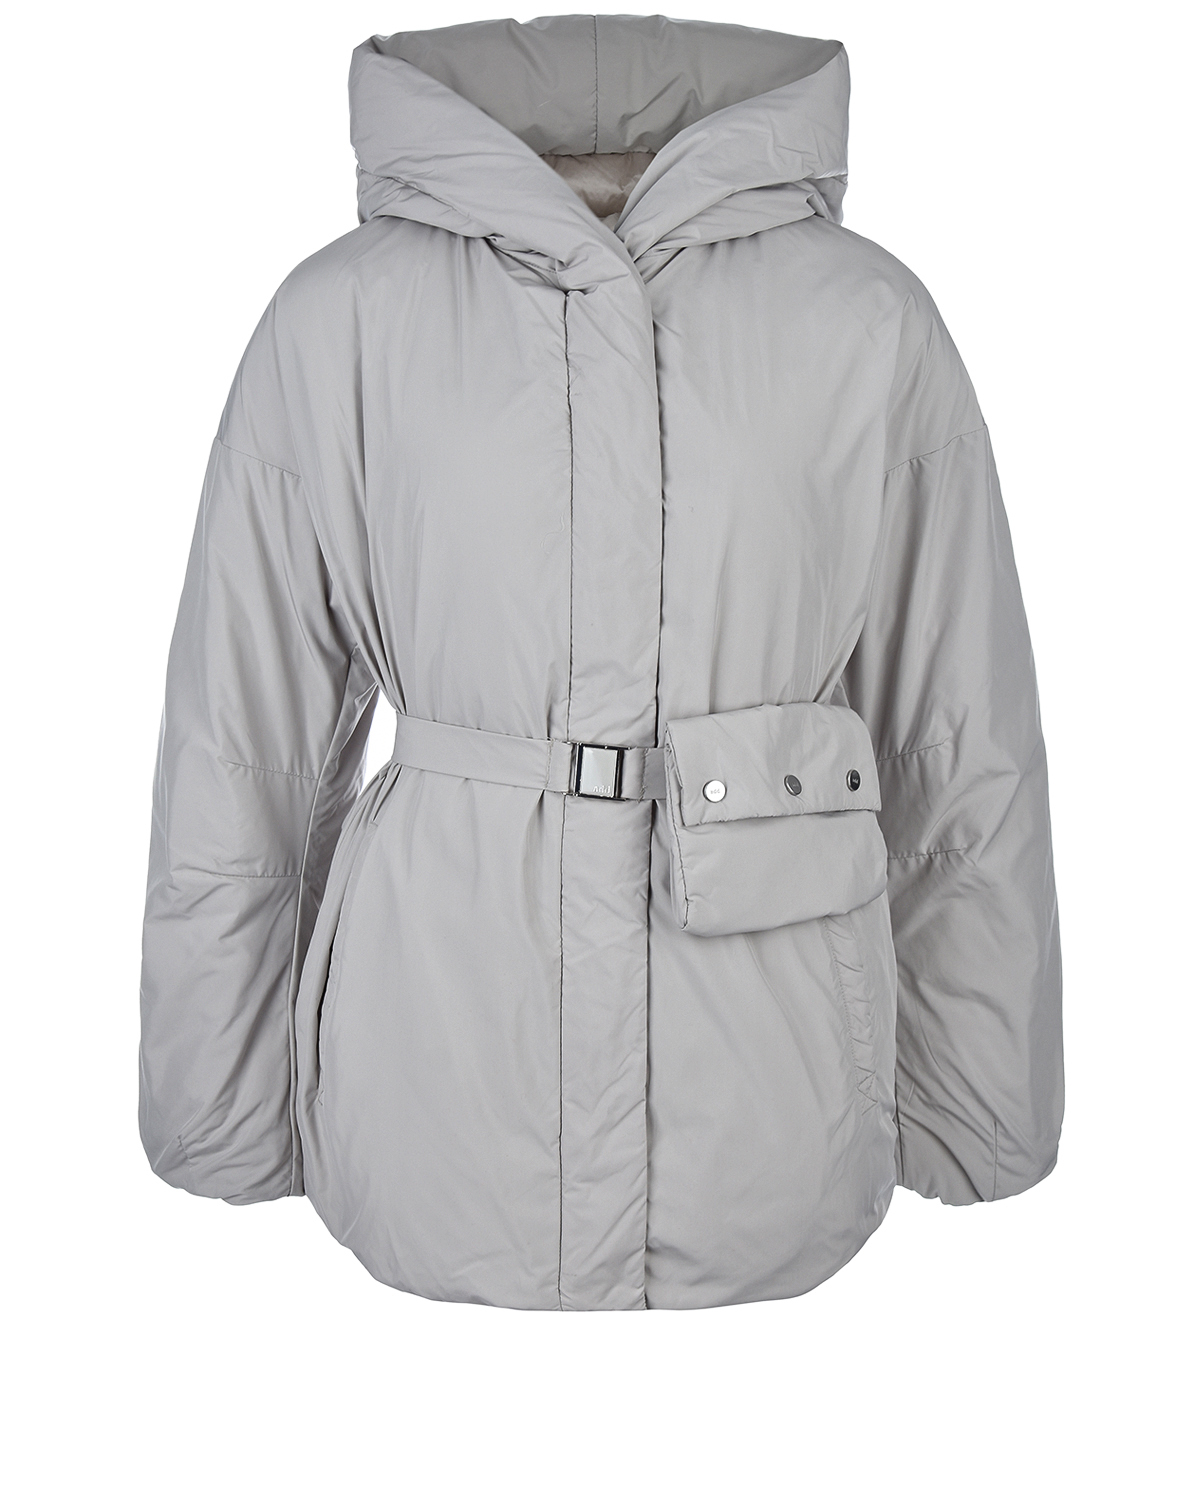 Удлиненная серая куртка ADD, размер 44, цвет серый